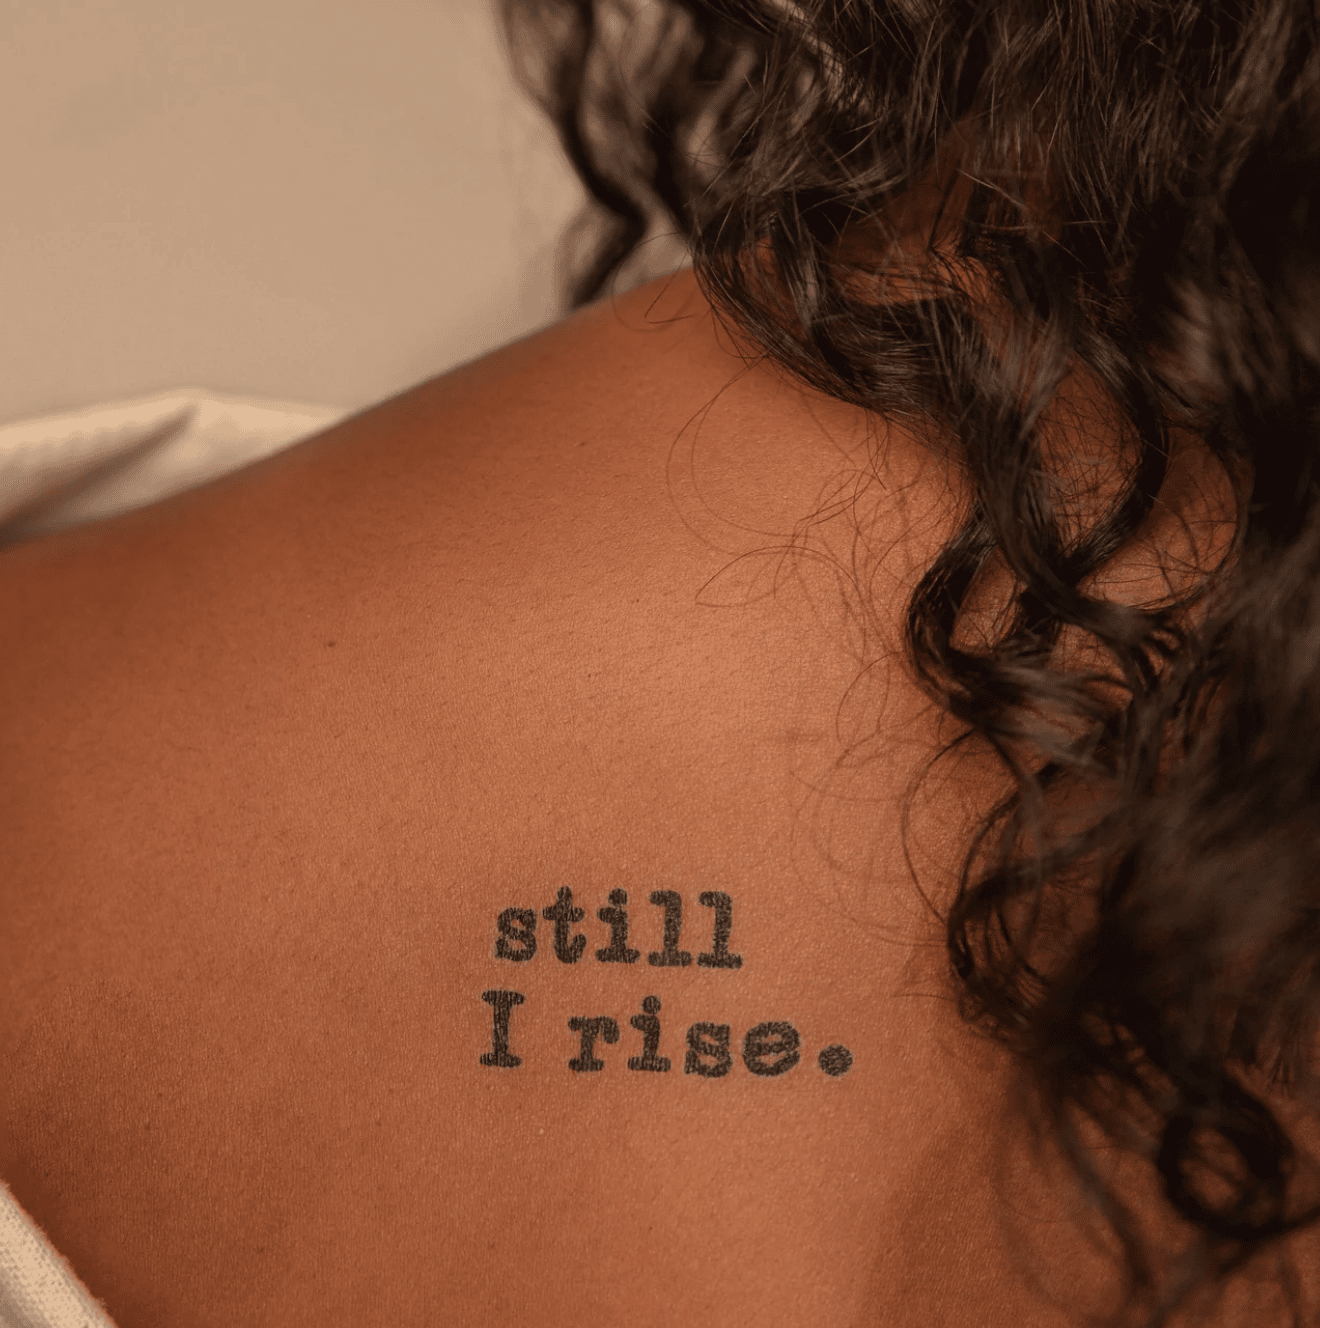 Still I rise 